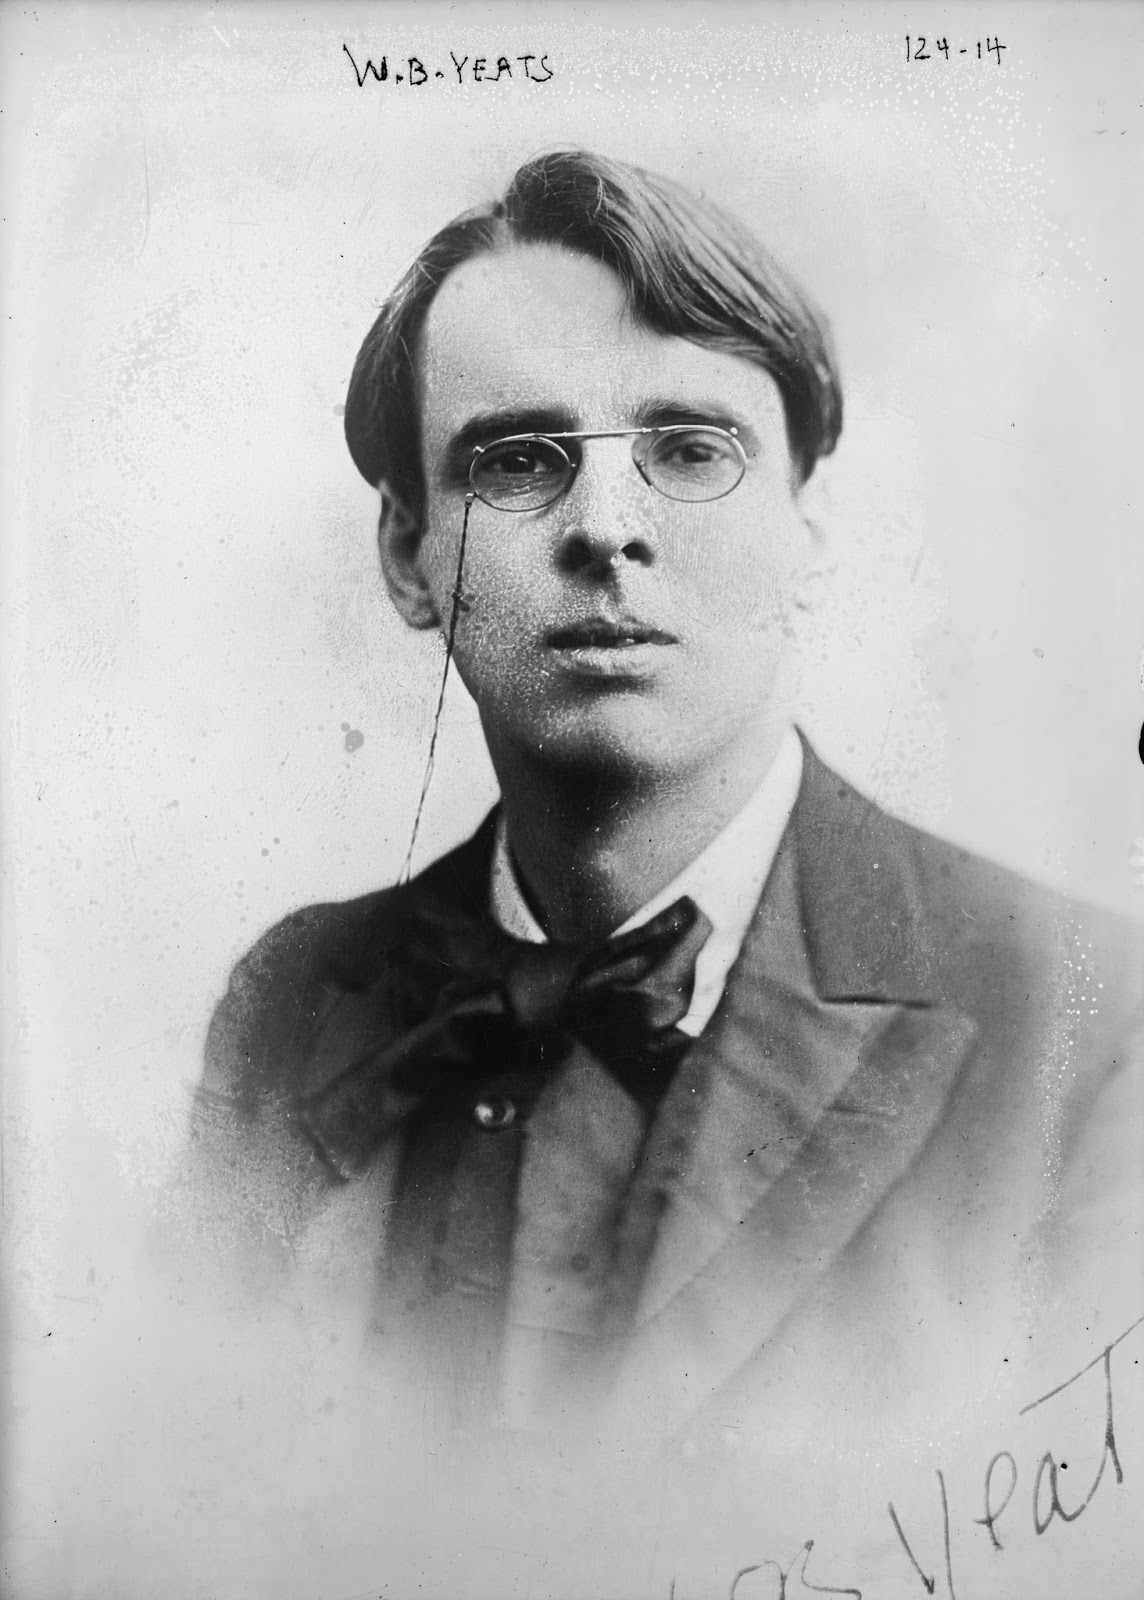 Sada Raamatut. Lugemiselamusi igast maailma nurgast 1923. W. B. Yeats